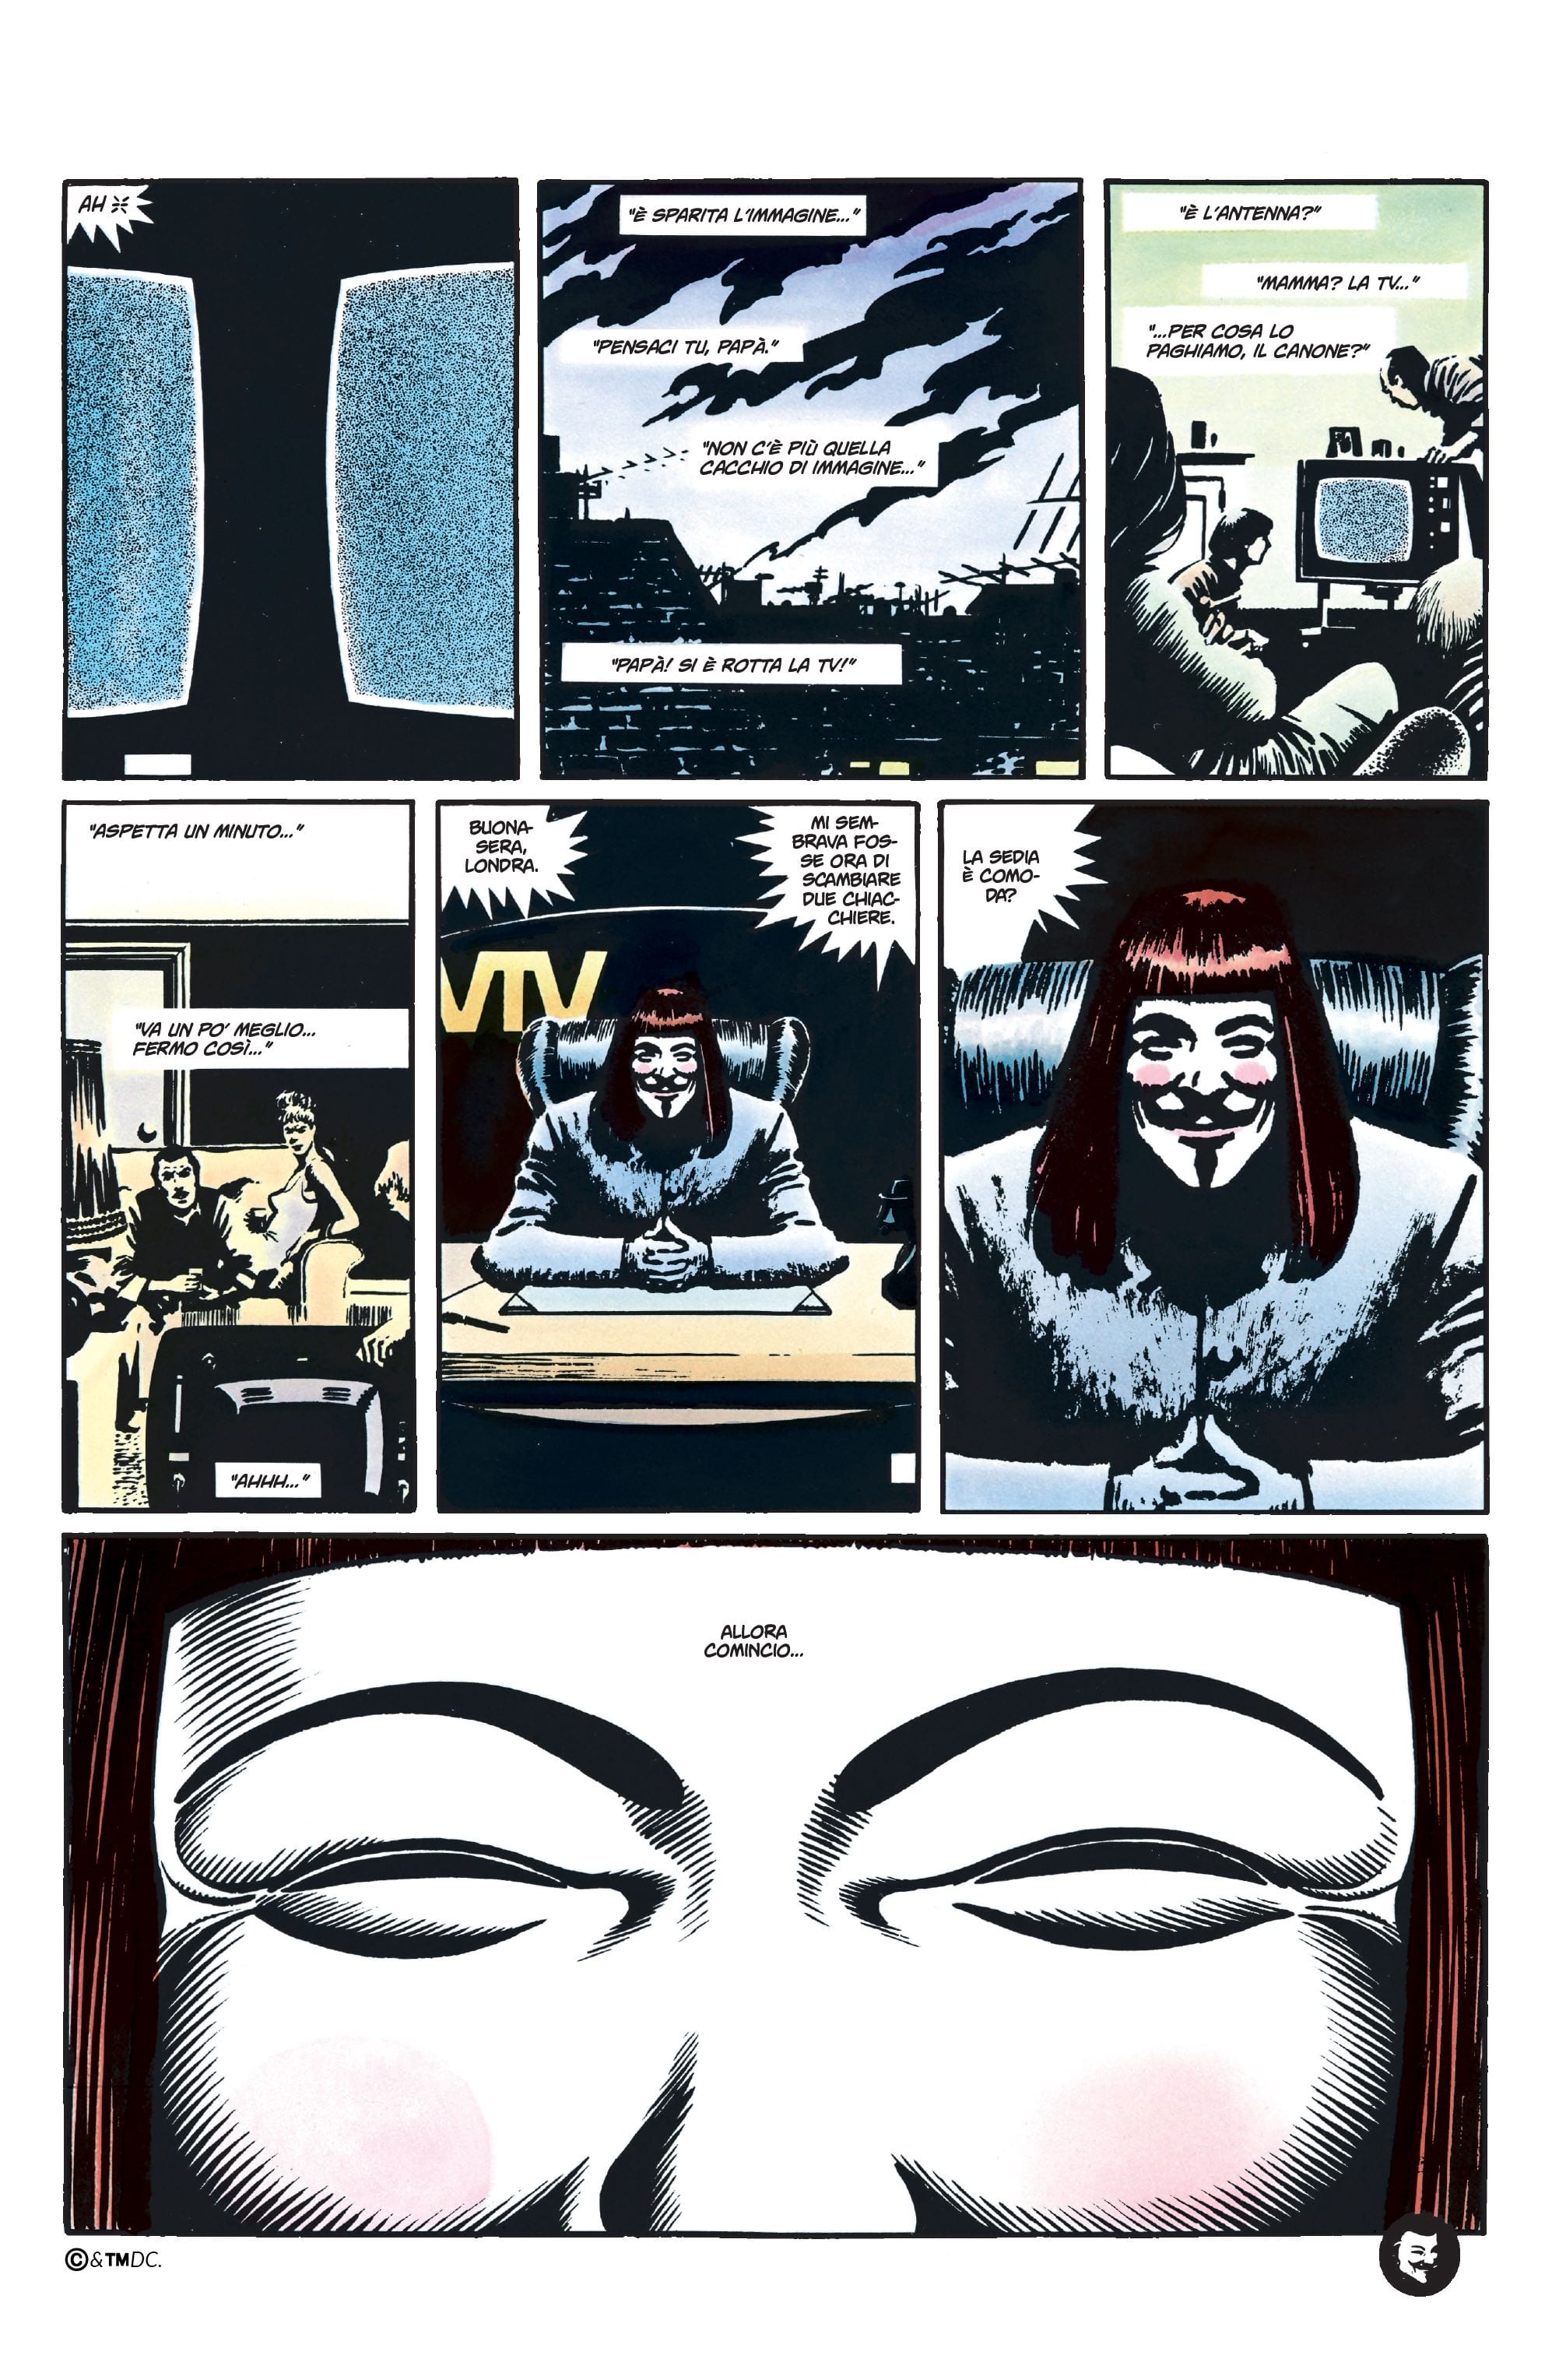 Immagine tratta da V per Vendetta, edizione Absolute, DC Comics Panini